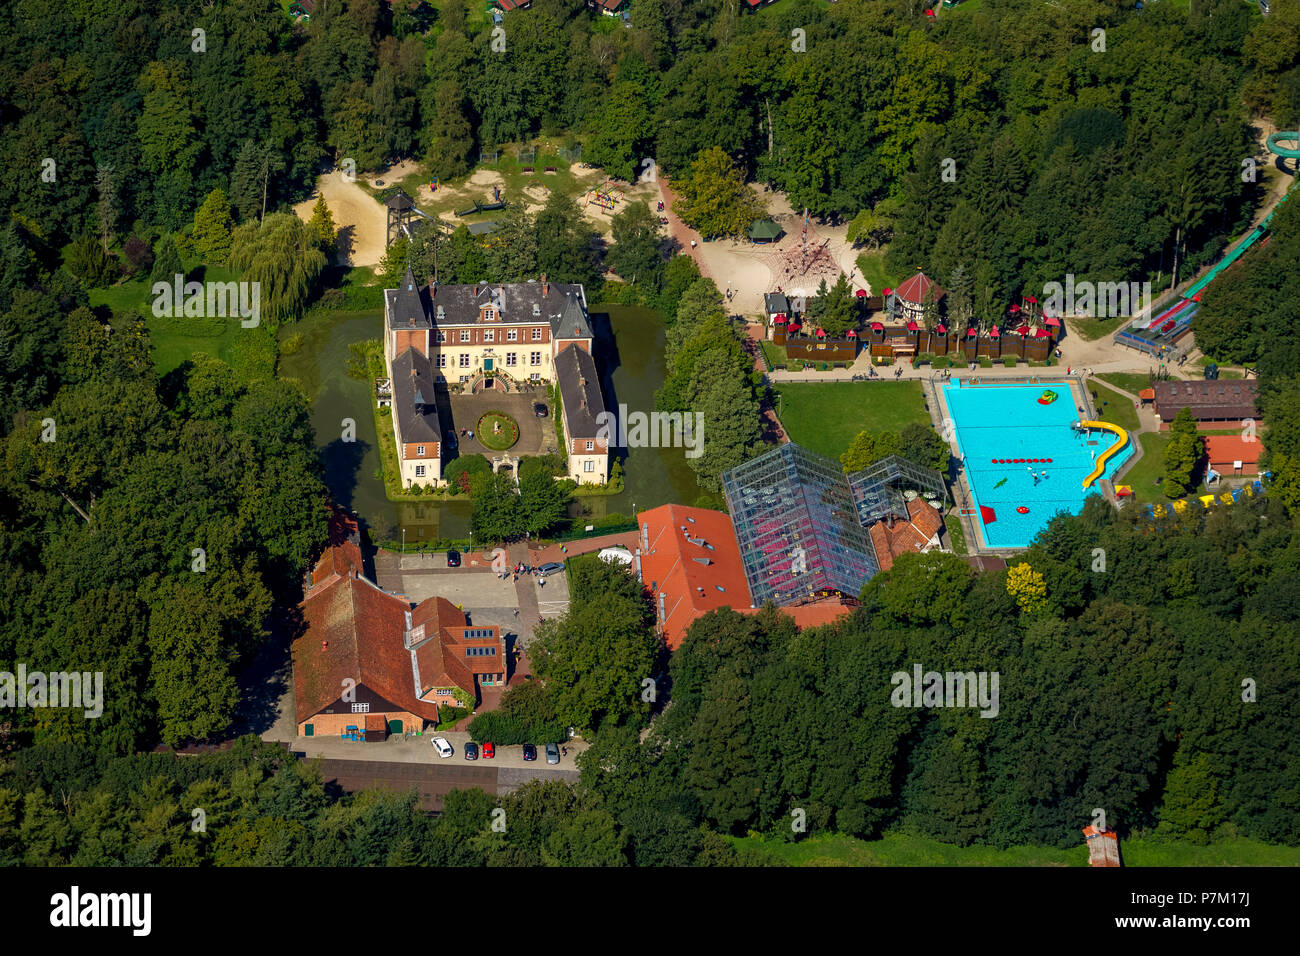 Luftbild, Schloss Dankern Ferienzentrum mit Kabel-Skikurs, Kartbahnen, Surf- und Tauchschule, Haren (Ems), Emsland, Niedersachsen, Deutschland Stockfoto